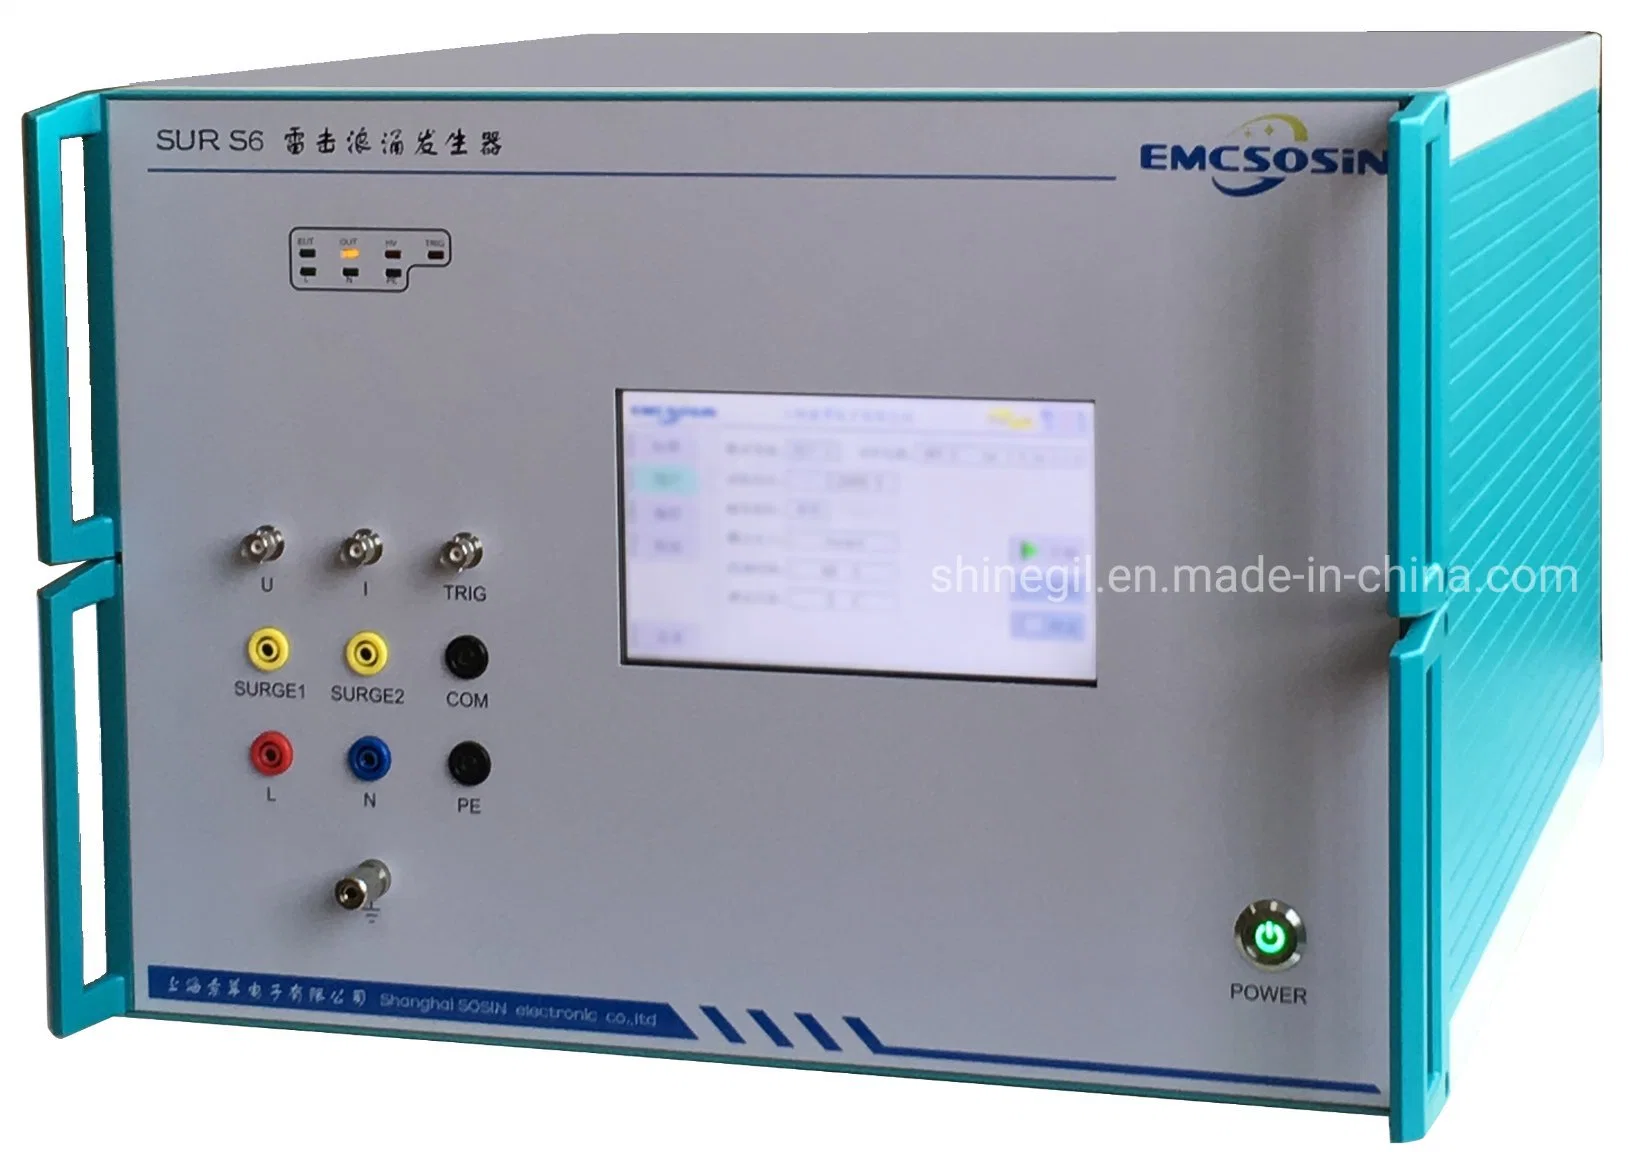 EMC скачков напряжения генератора/симулятор в уравнительный иммунитет испытания согласно требованиям стандарта IEC 61000-4-5